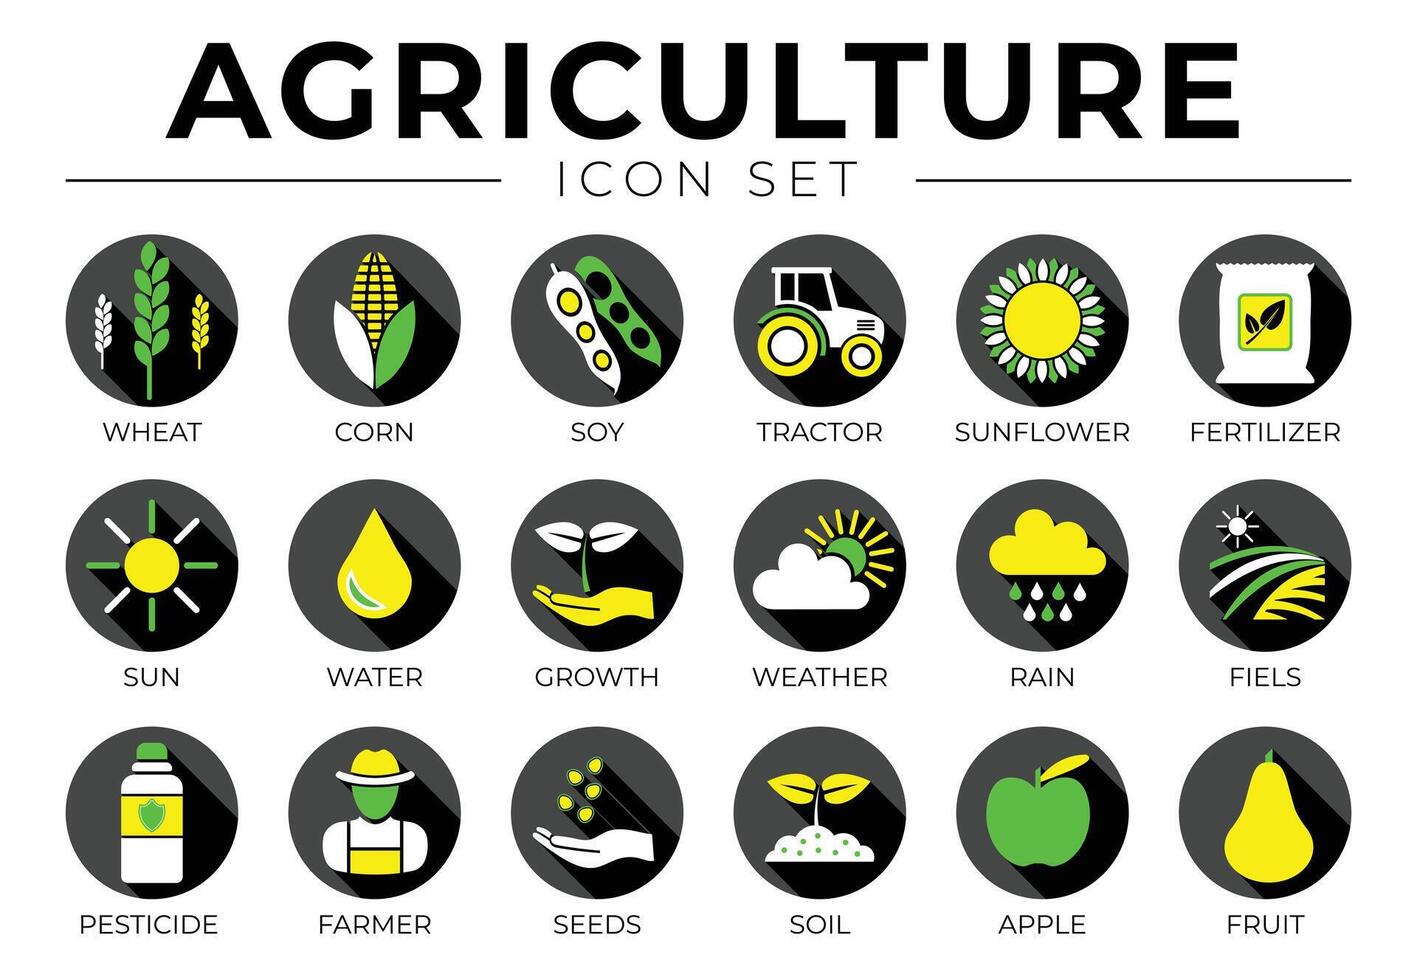 Preto agricultura volta ícone conjunto do trigo, milho, soja, trator, girassol, fertilizante, sol, água, crescimento, clima, chuva, Campos, pesticida, agricultor sementes, solo, maçã, fruta ícones. vetor